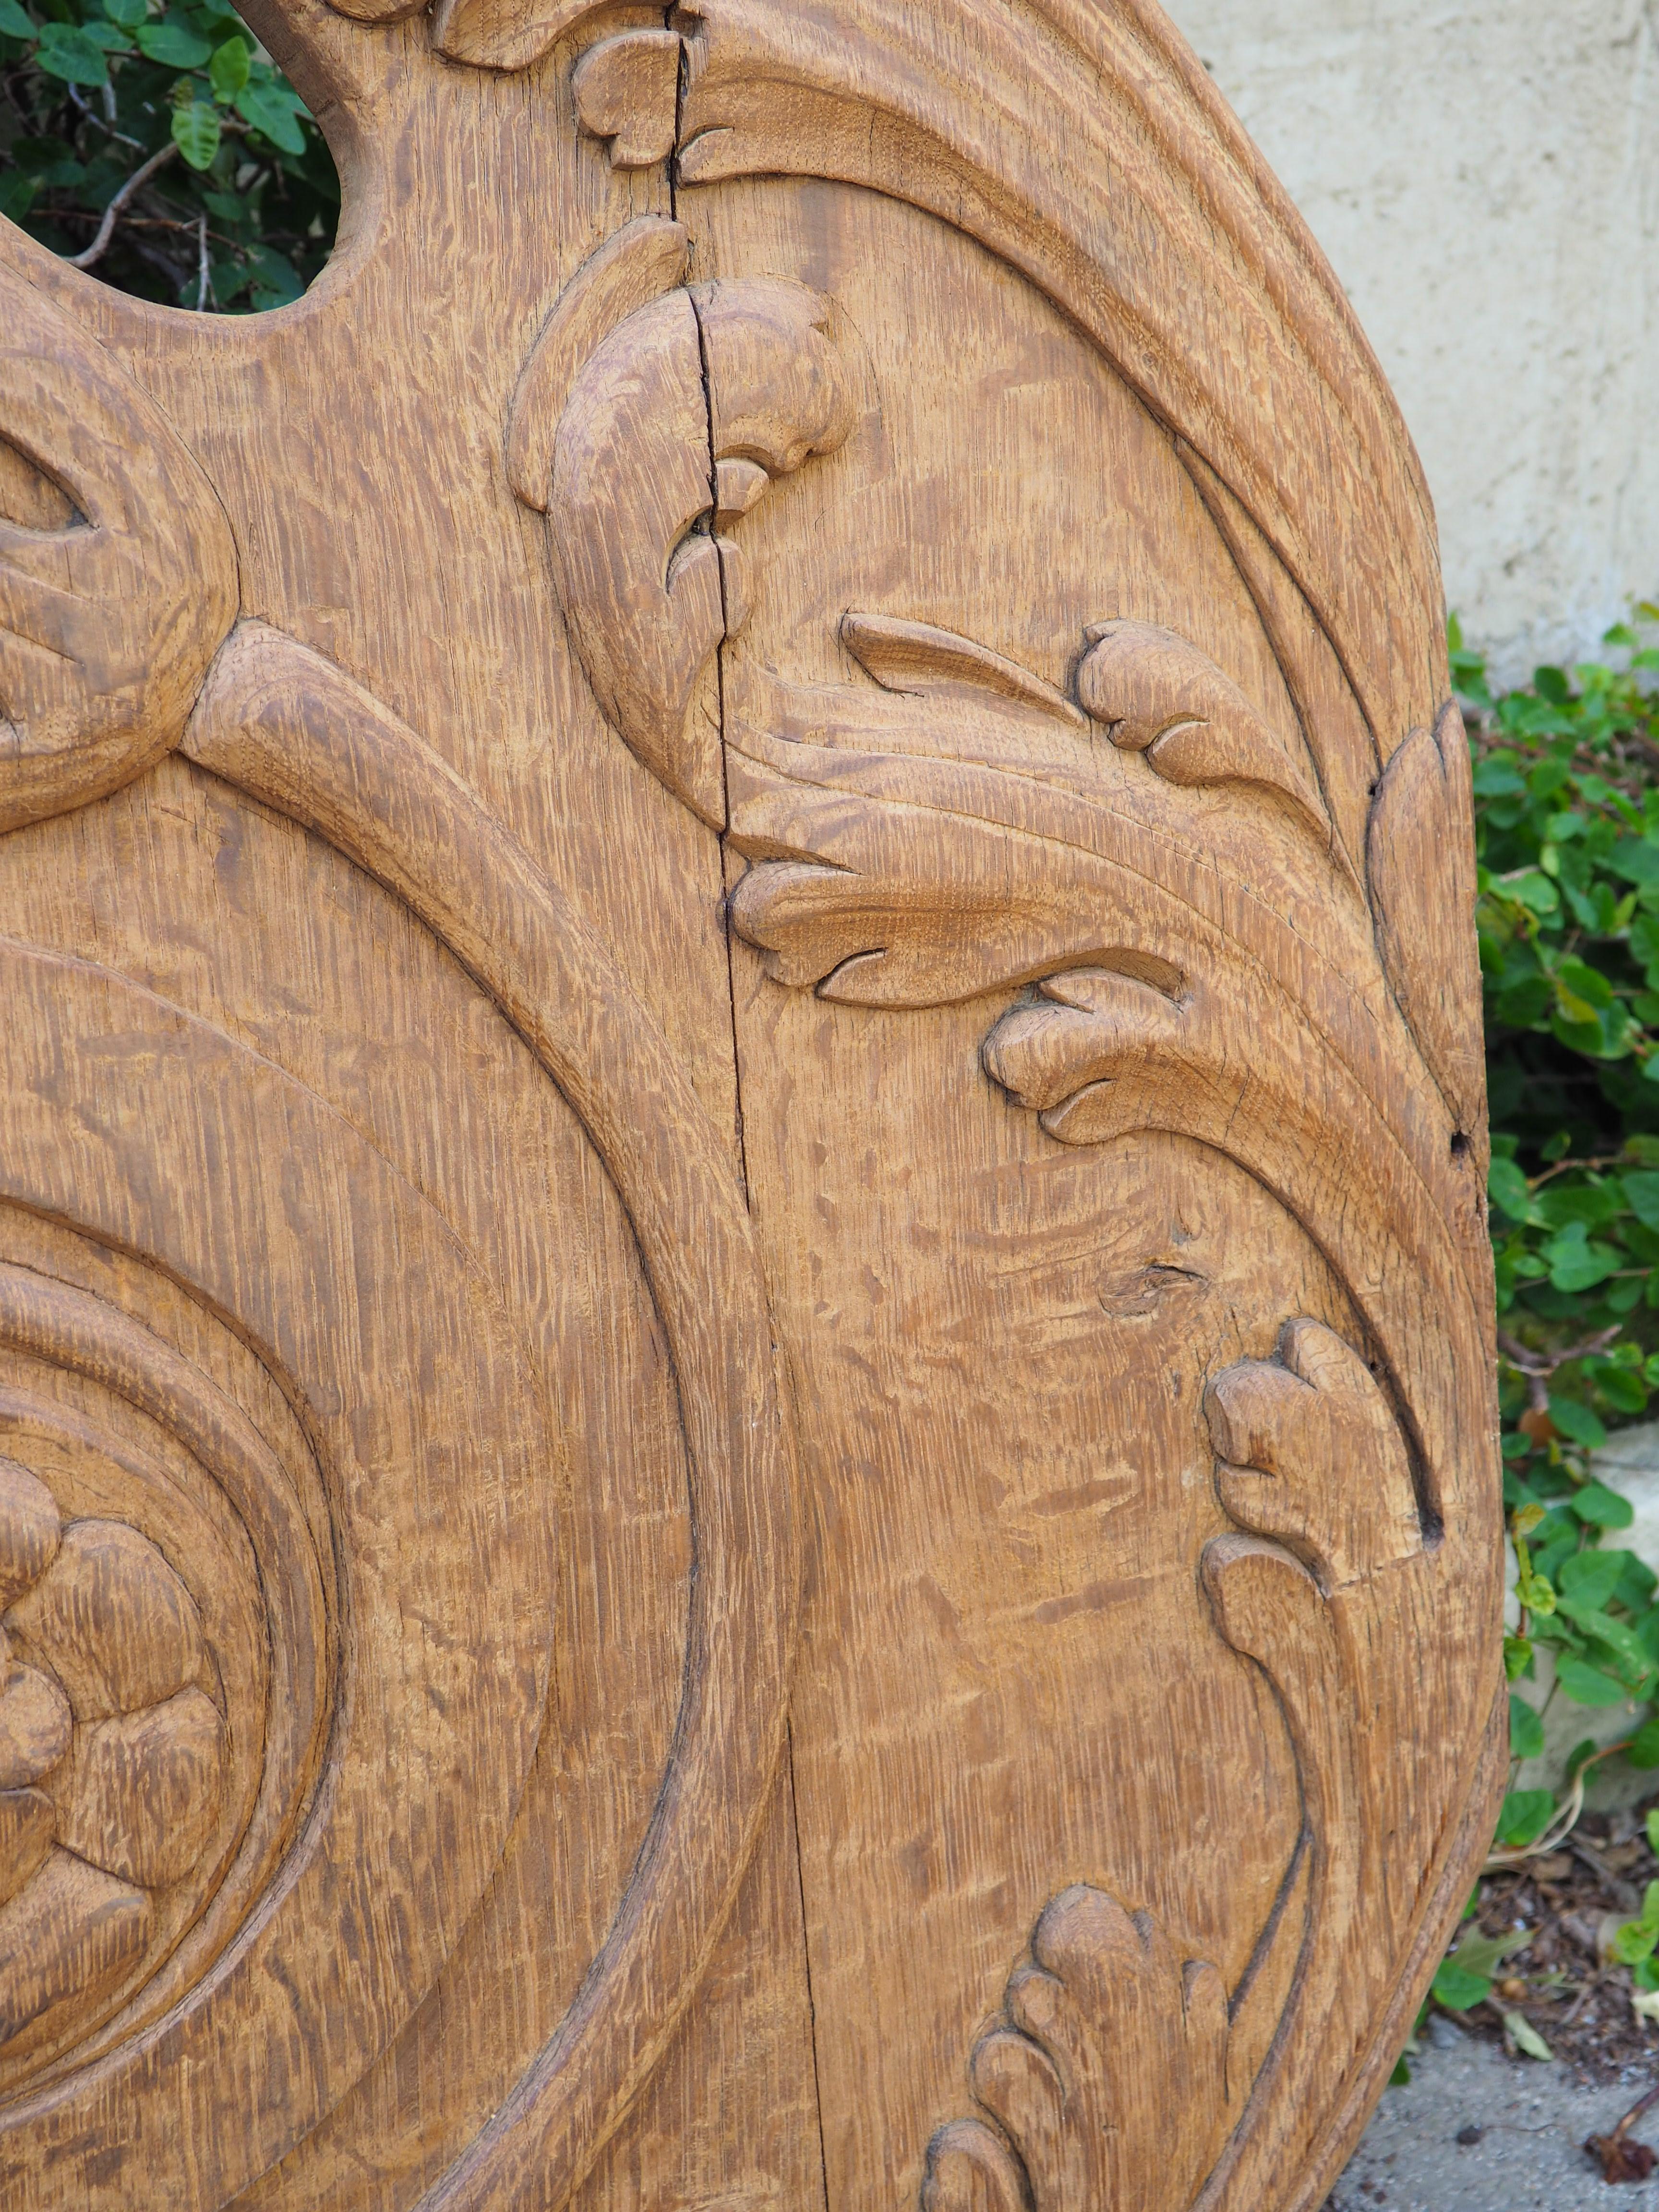 Cette paire de grands éléments de boiserie en chêne a été sculptée en Normandie, en France, vers 1880. Boiserie est le terme français pour 